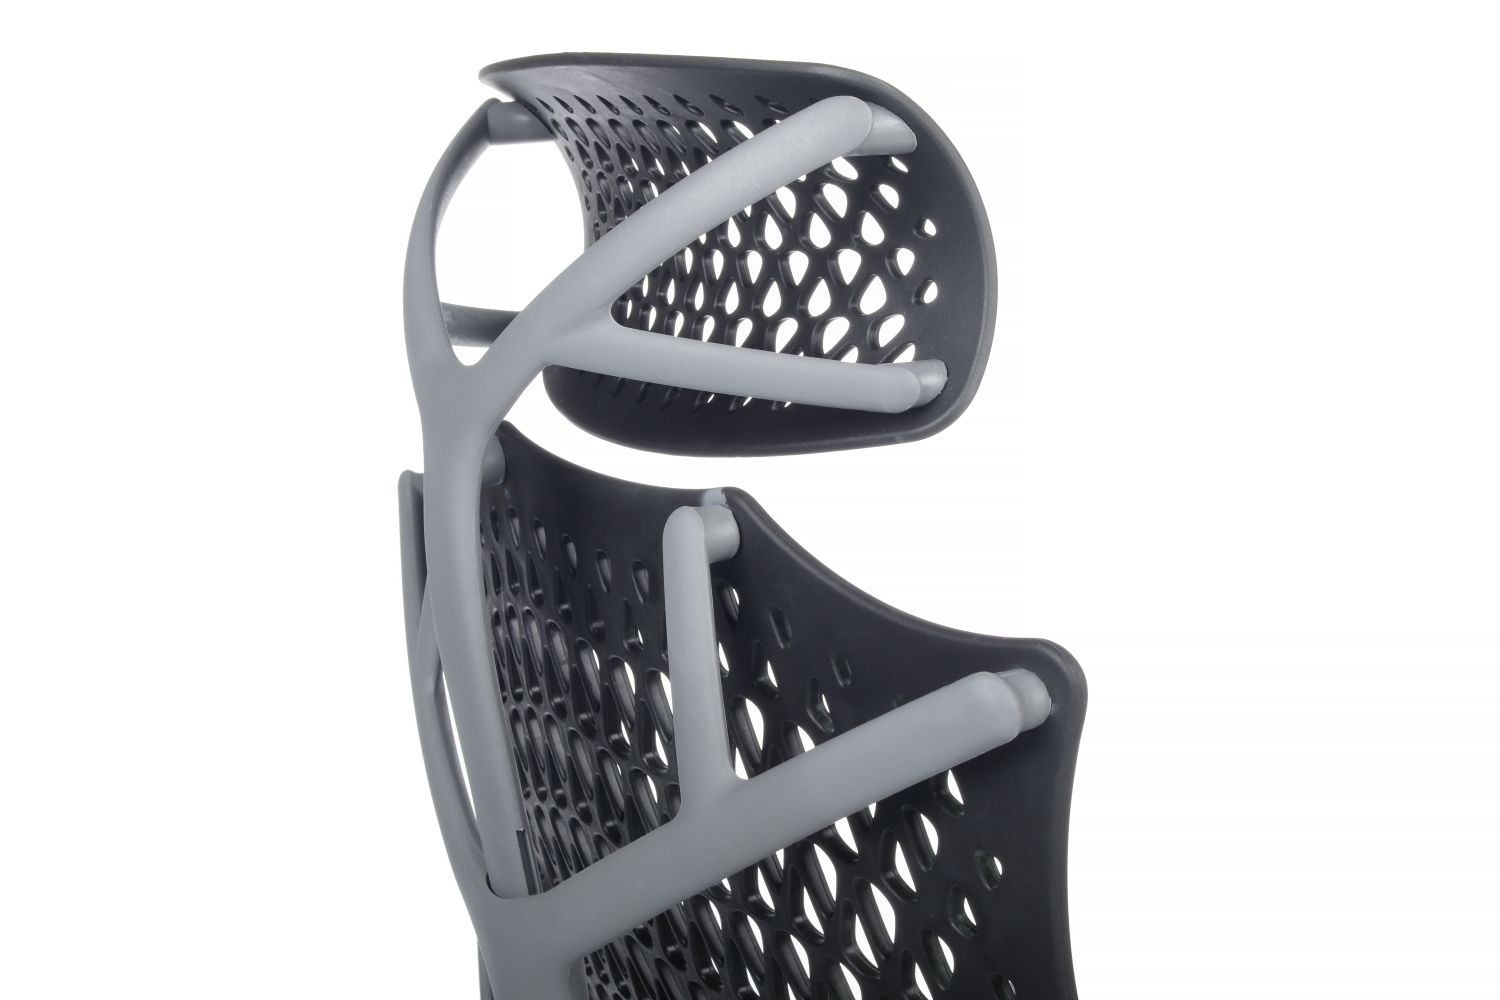 Кресло компьютерное RIVA DESIGN Ego A644 Черный / Серый